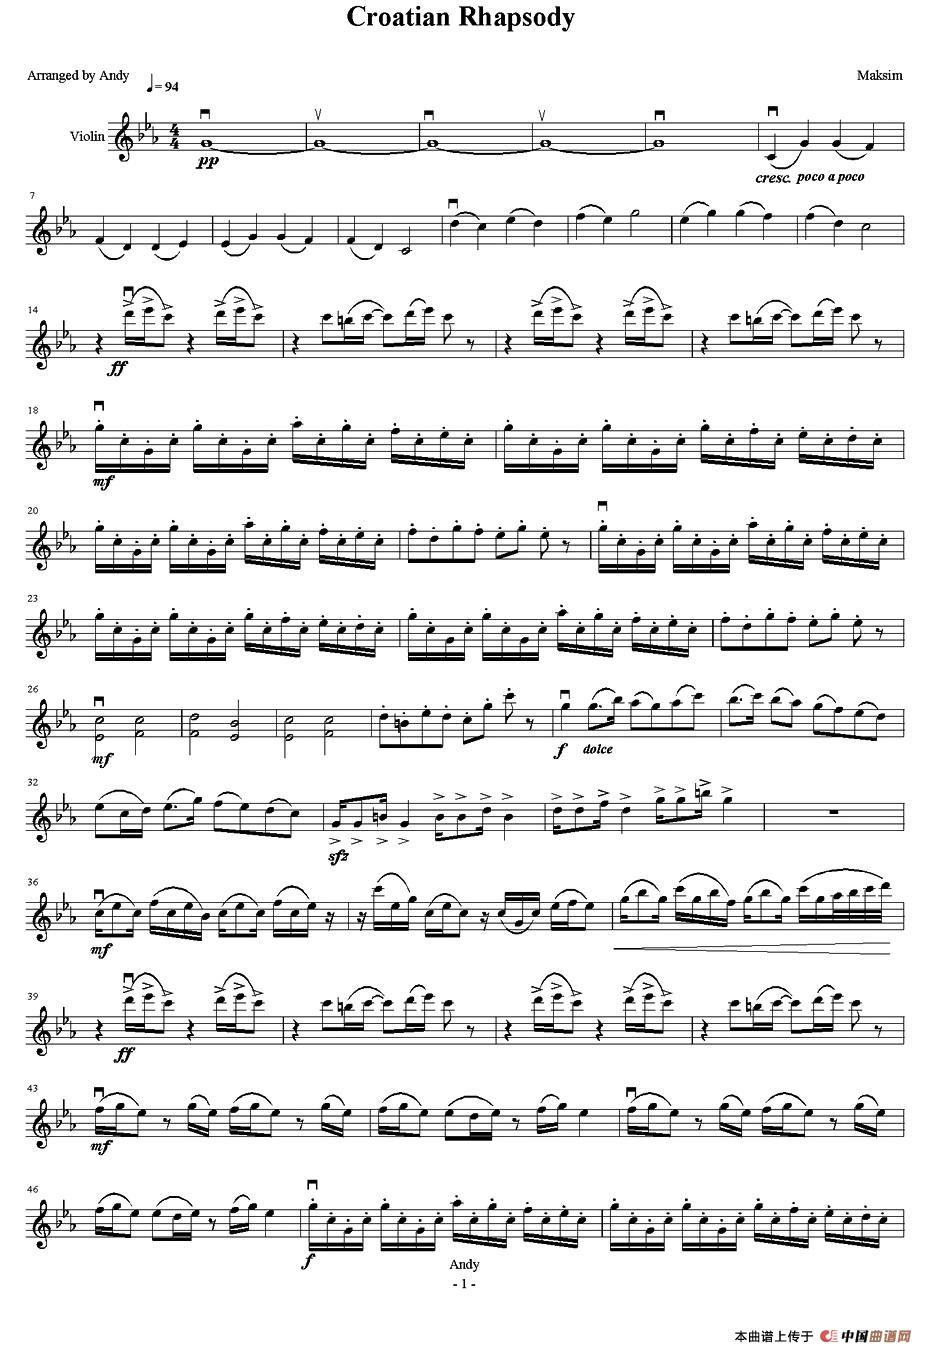 克罗地亚狂想曲（Croatian Rhapsody）小提琴谱